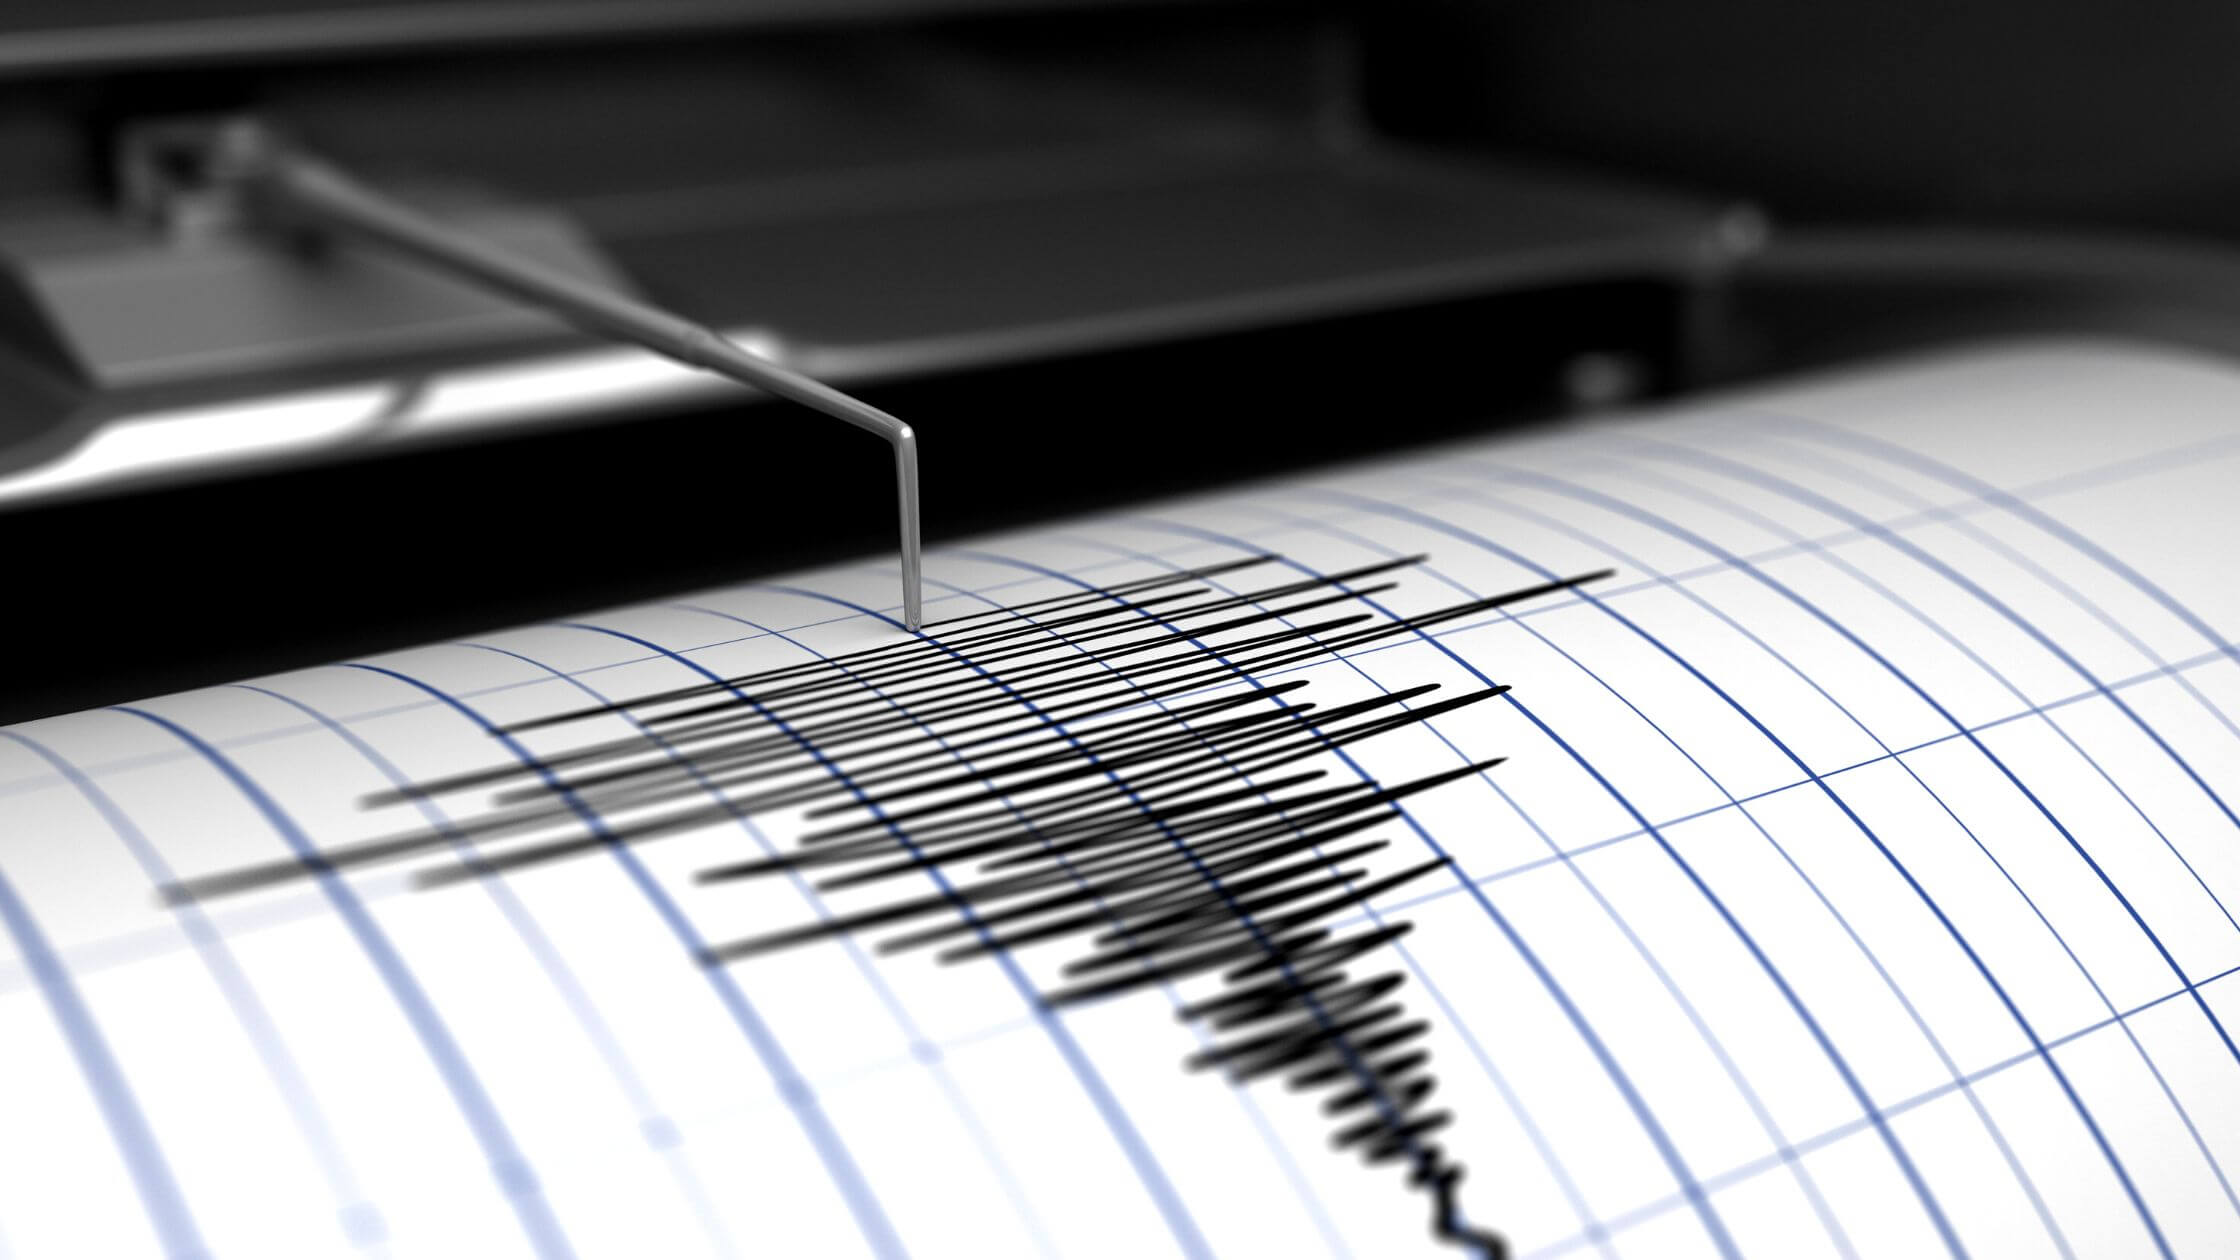 Un terremoto de magnitud 6.1 sacude el noreste de Turquía